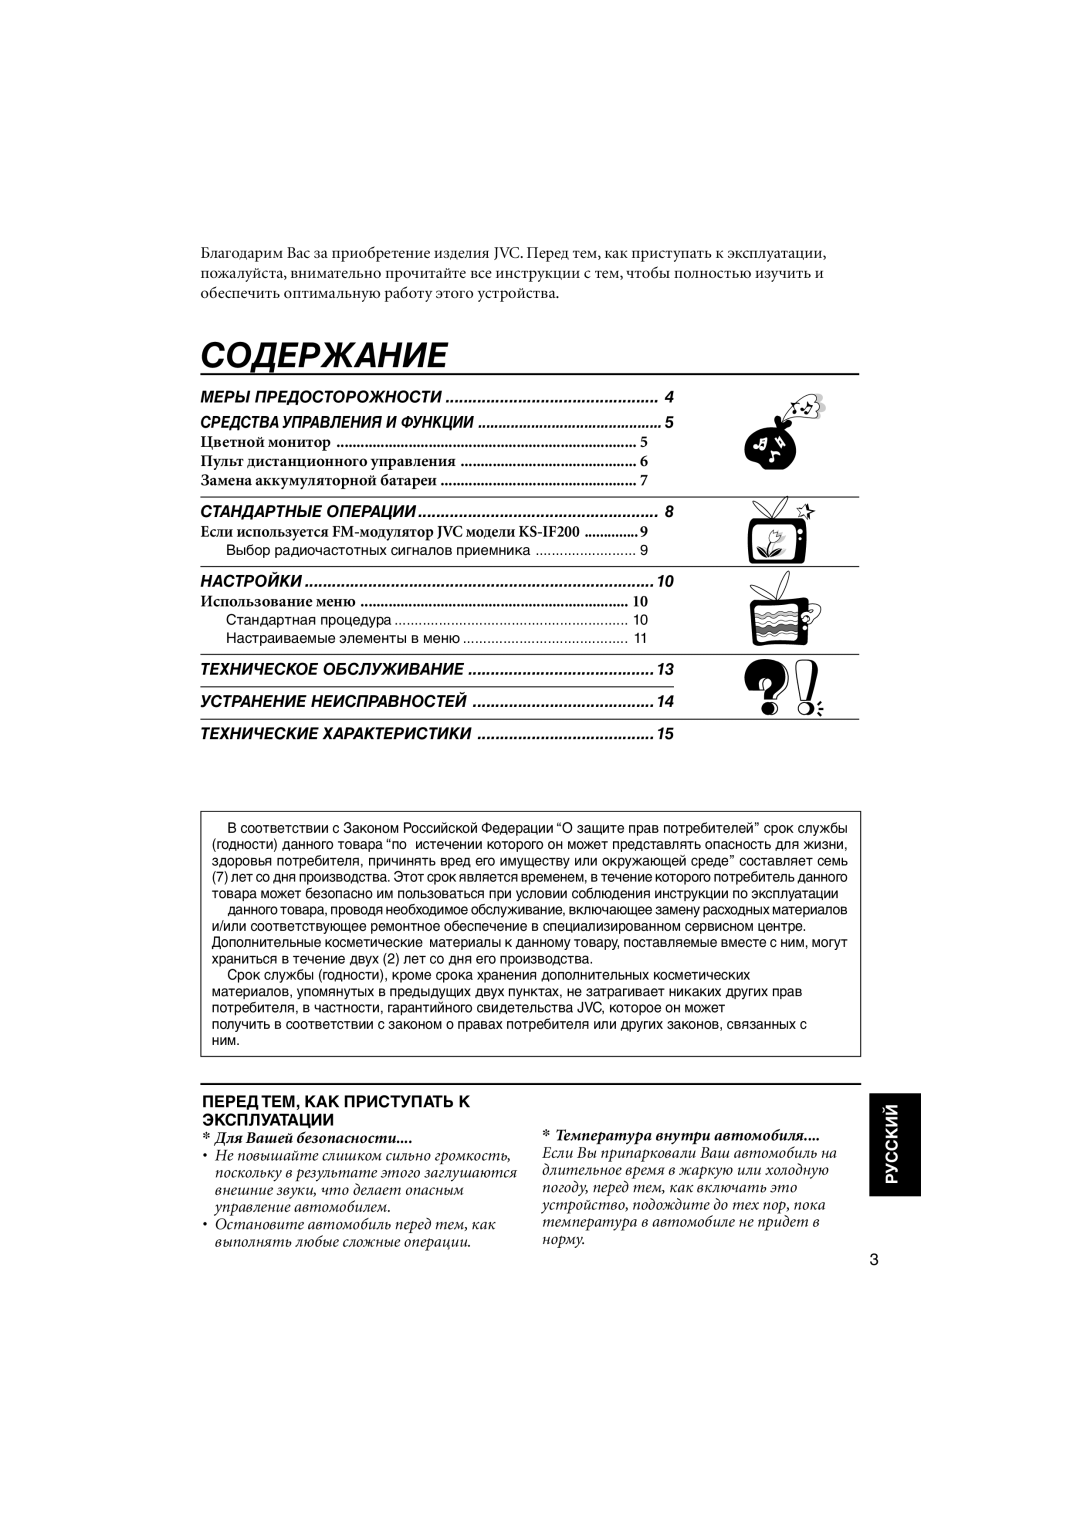 JVC KV-MH6500 manual Содержание, Настройки, Перед Тем, Как Приступать К Эксплуатации, Для Вашей безопасности, Руcckий 